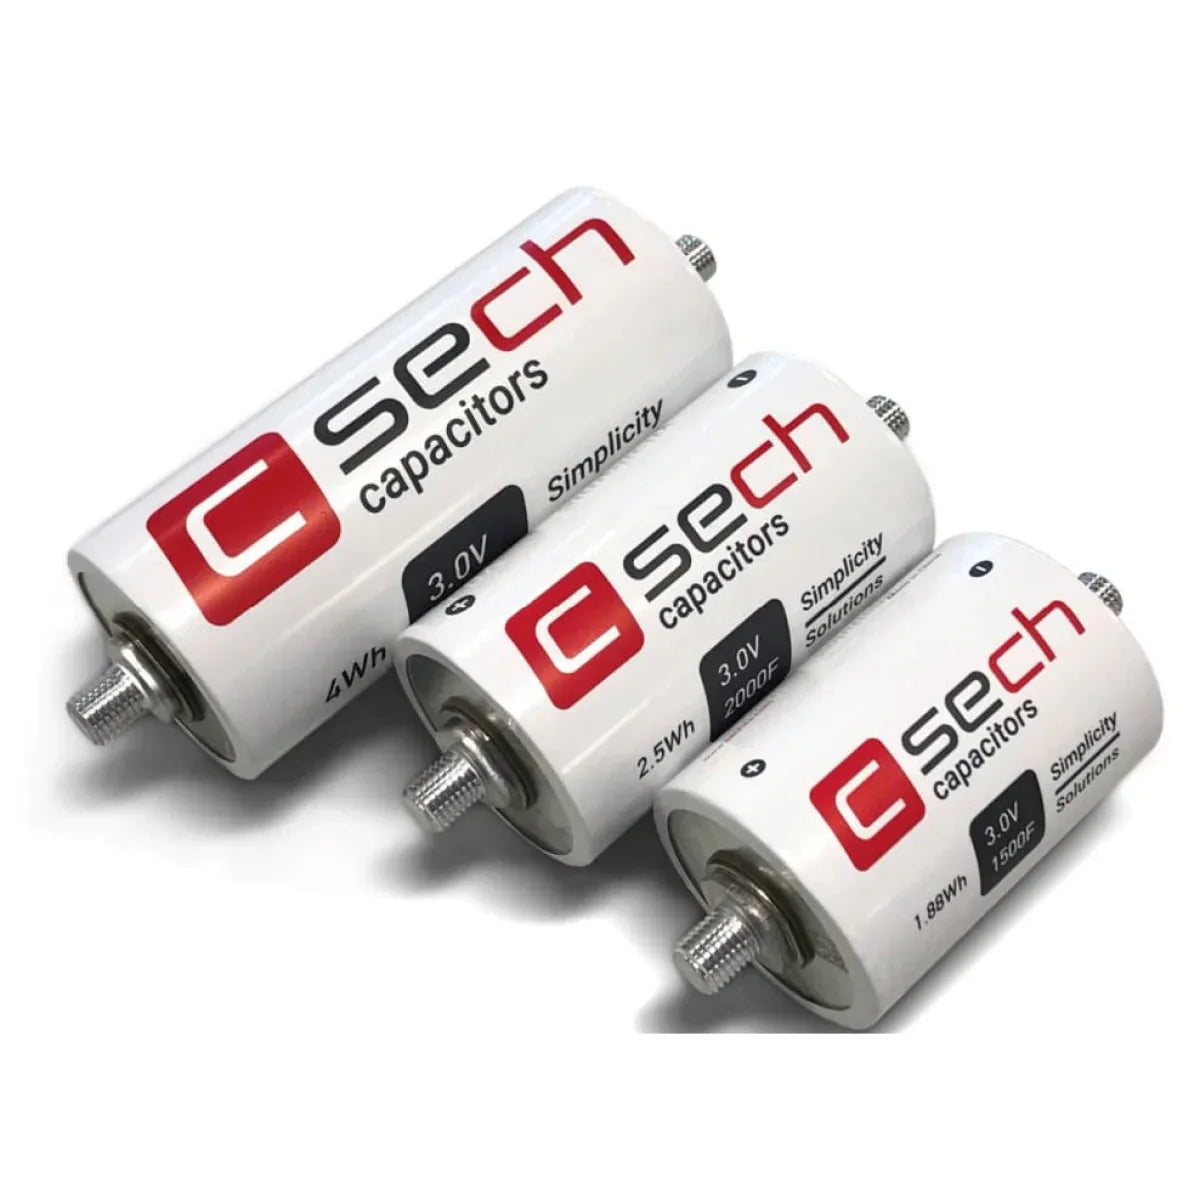 SECH SECH C60T-3R0-3000 3000 - Kondensator Supercap 3V FaradKondensator